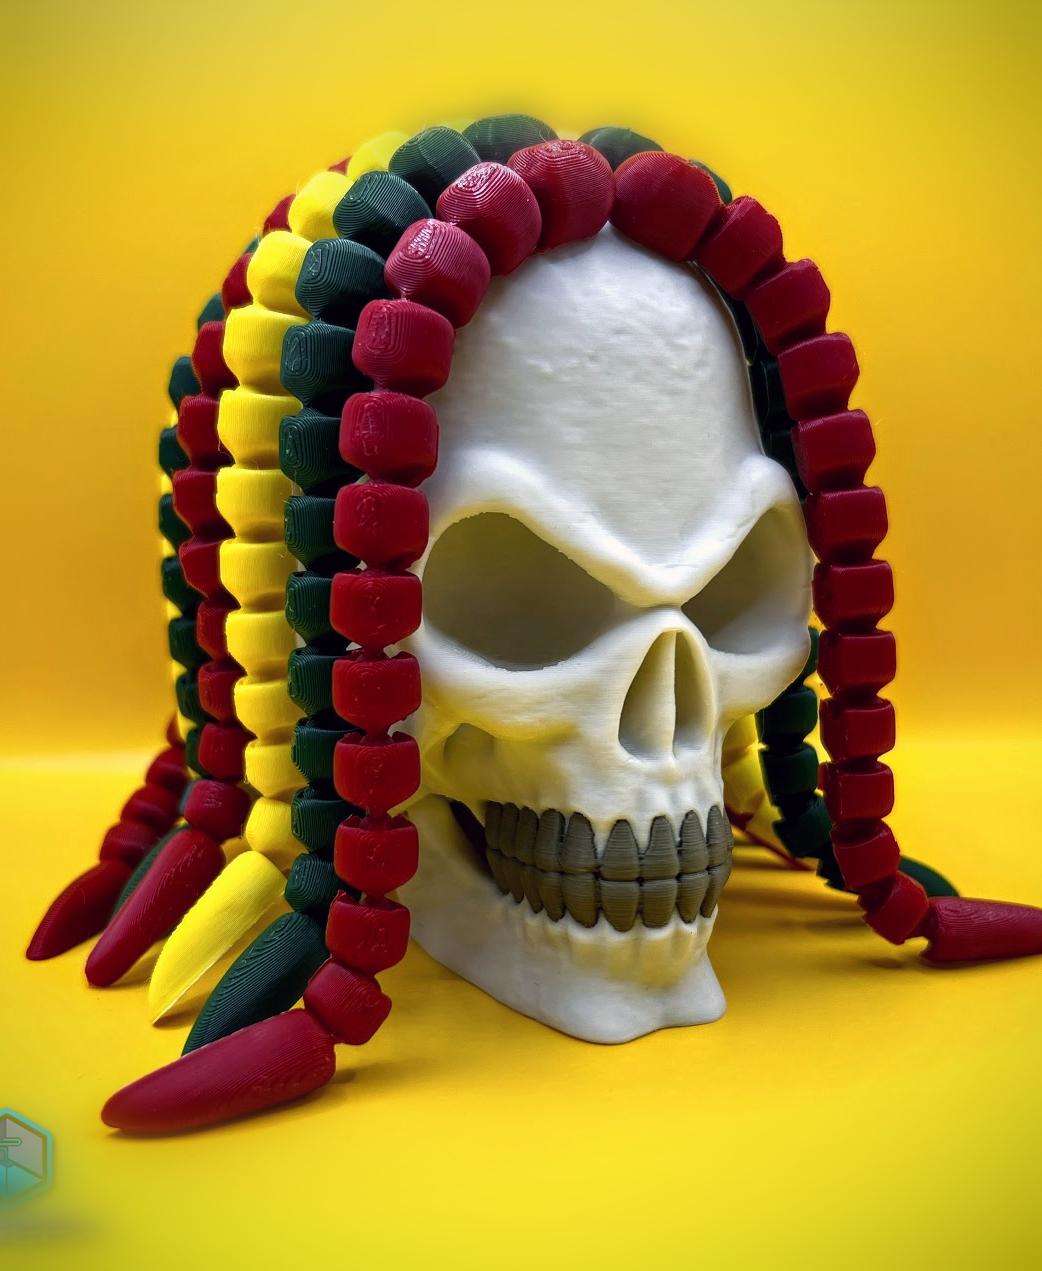 Rasta Skull 3d model